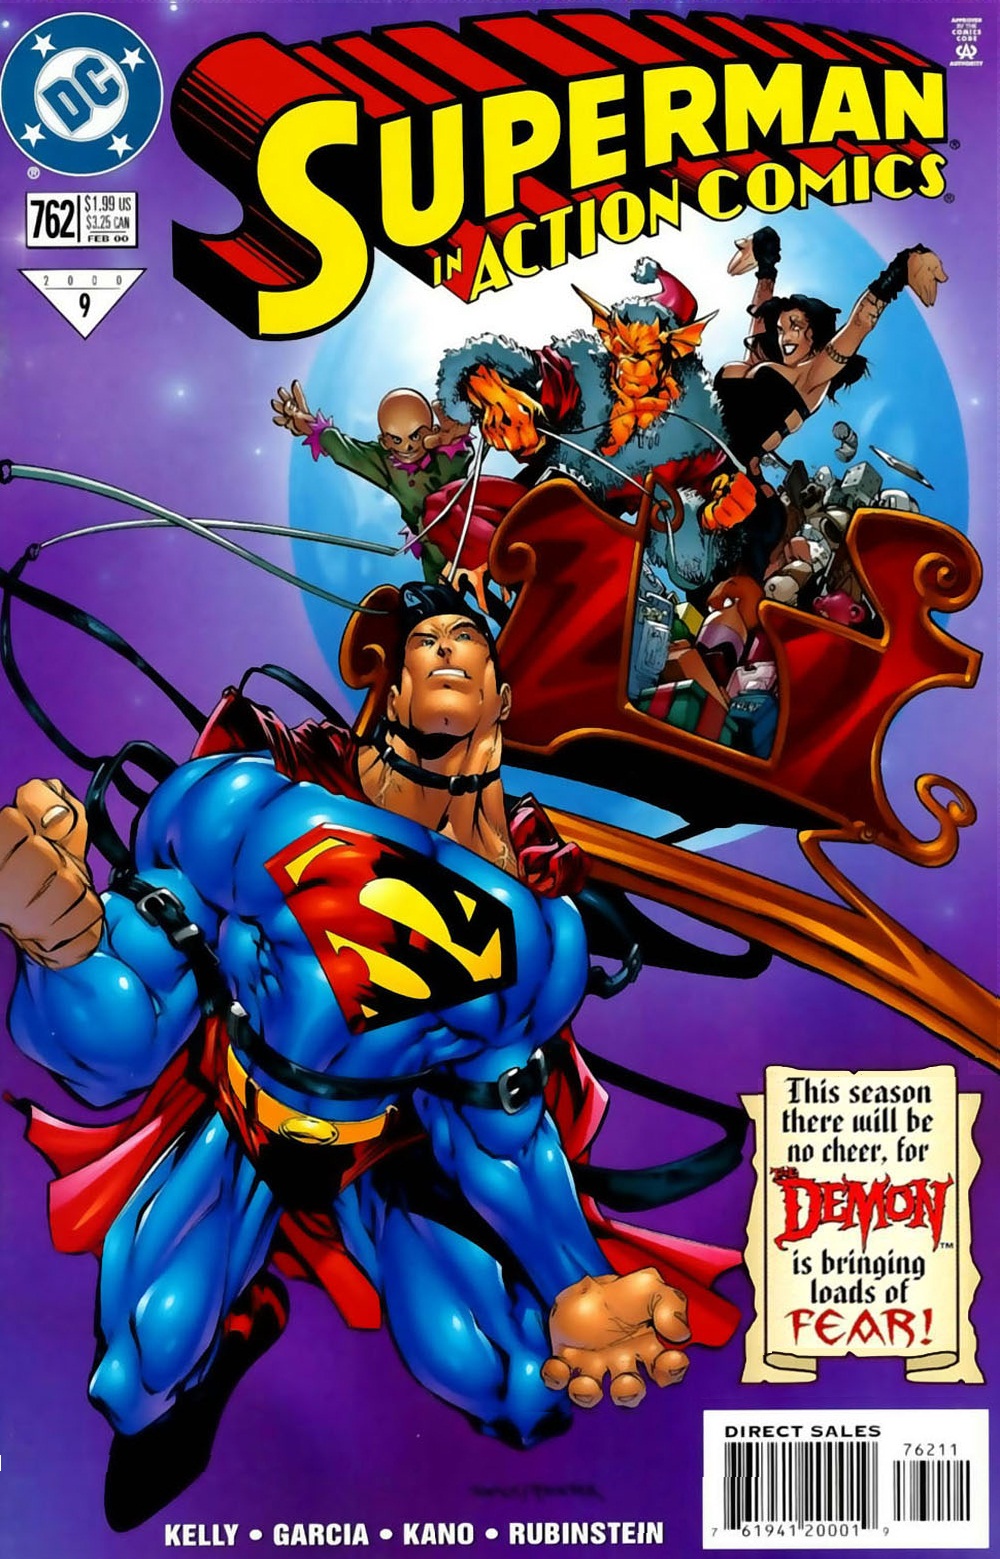 Action Comics Vol. 1 #762